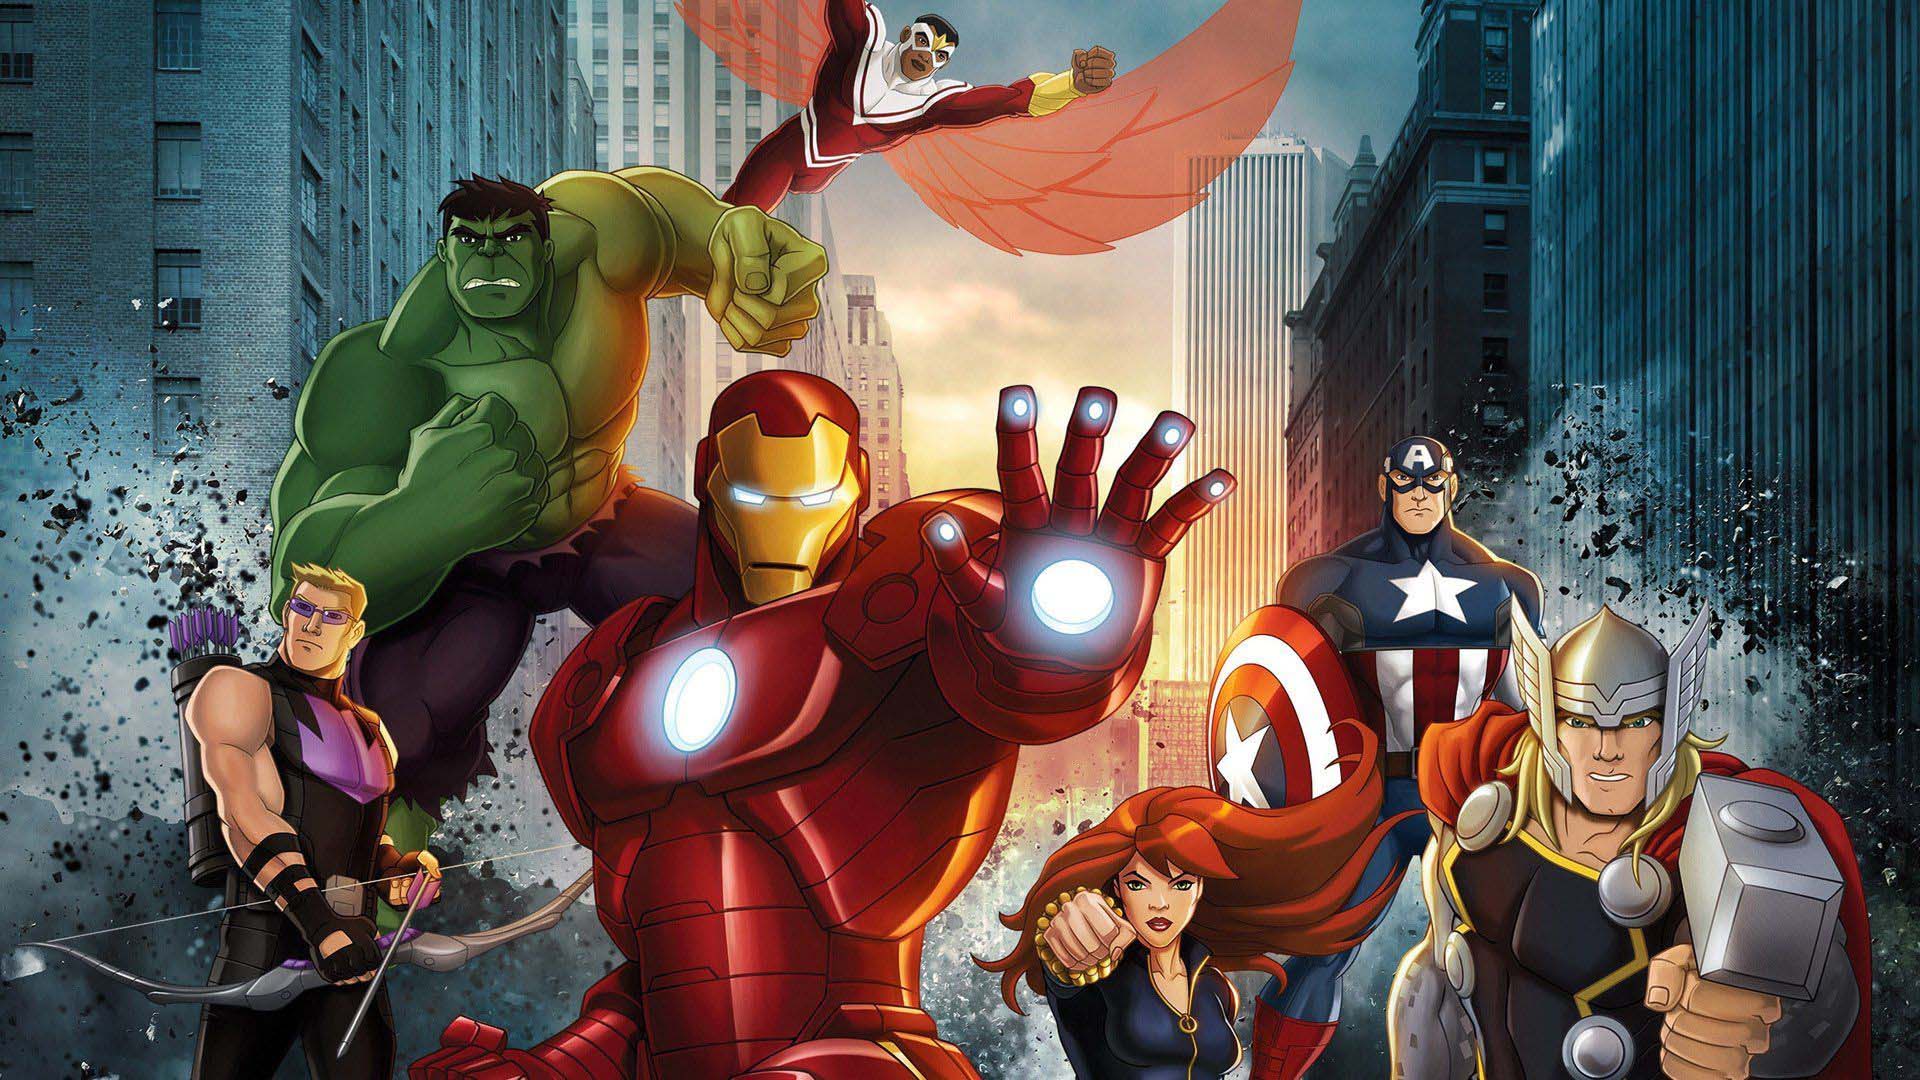 Anime Marvel's Avengers Assemble